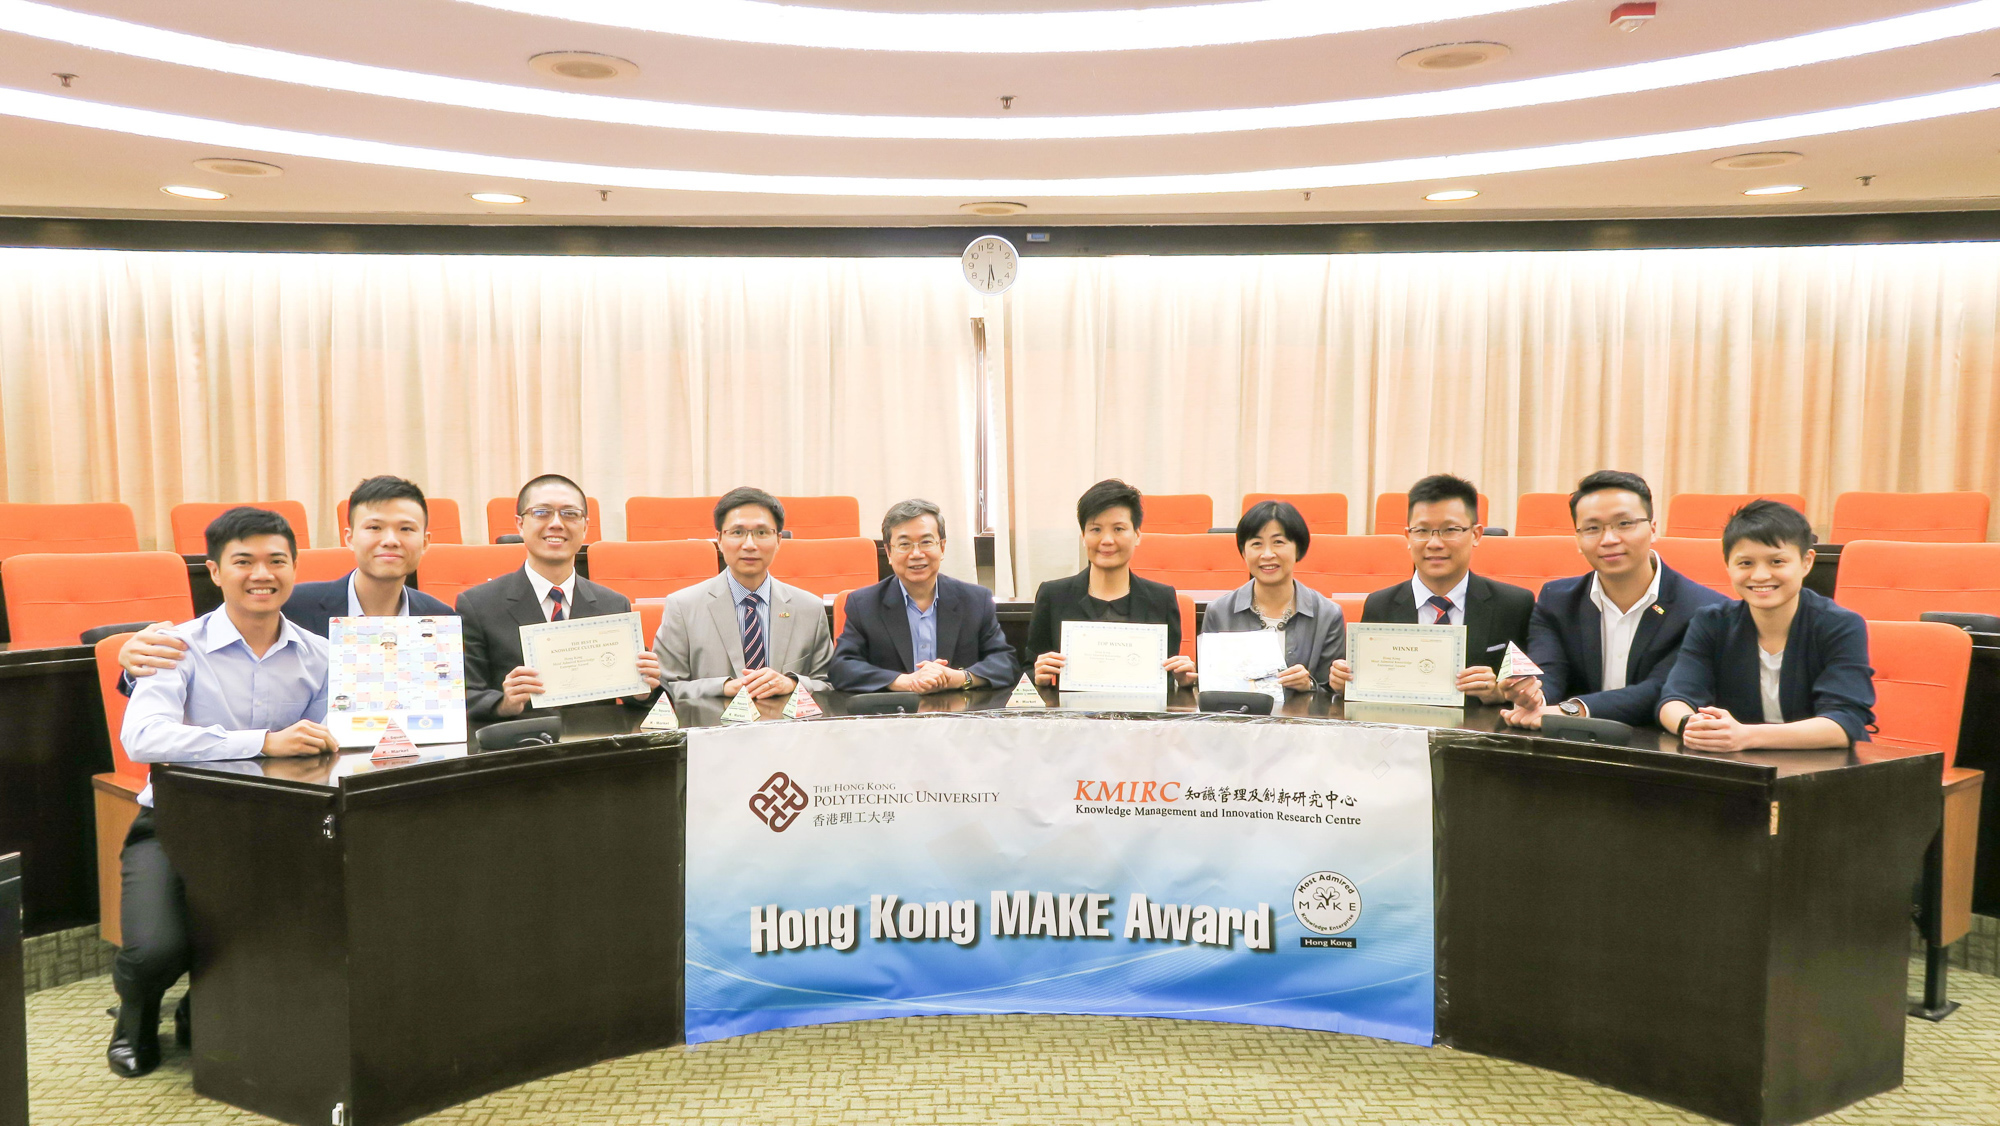 本署先后获得香港「最受推崇知识型机构大奖」及亚洲「最受推崇知识型机构大奖」，后者更是二零一七年度香港唯一获奖机构。